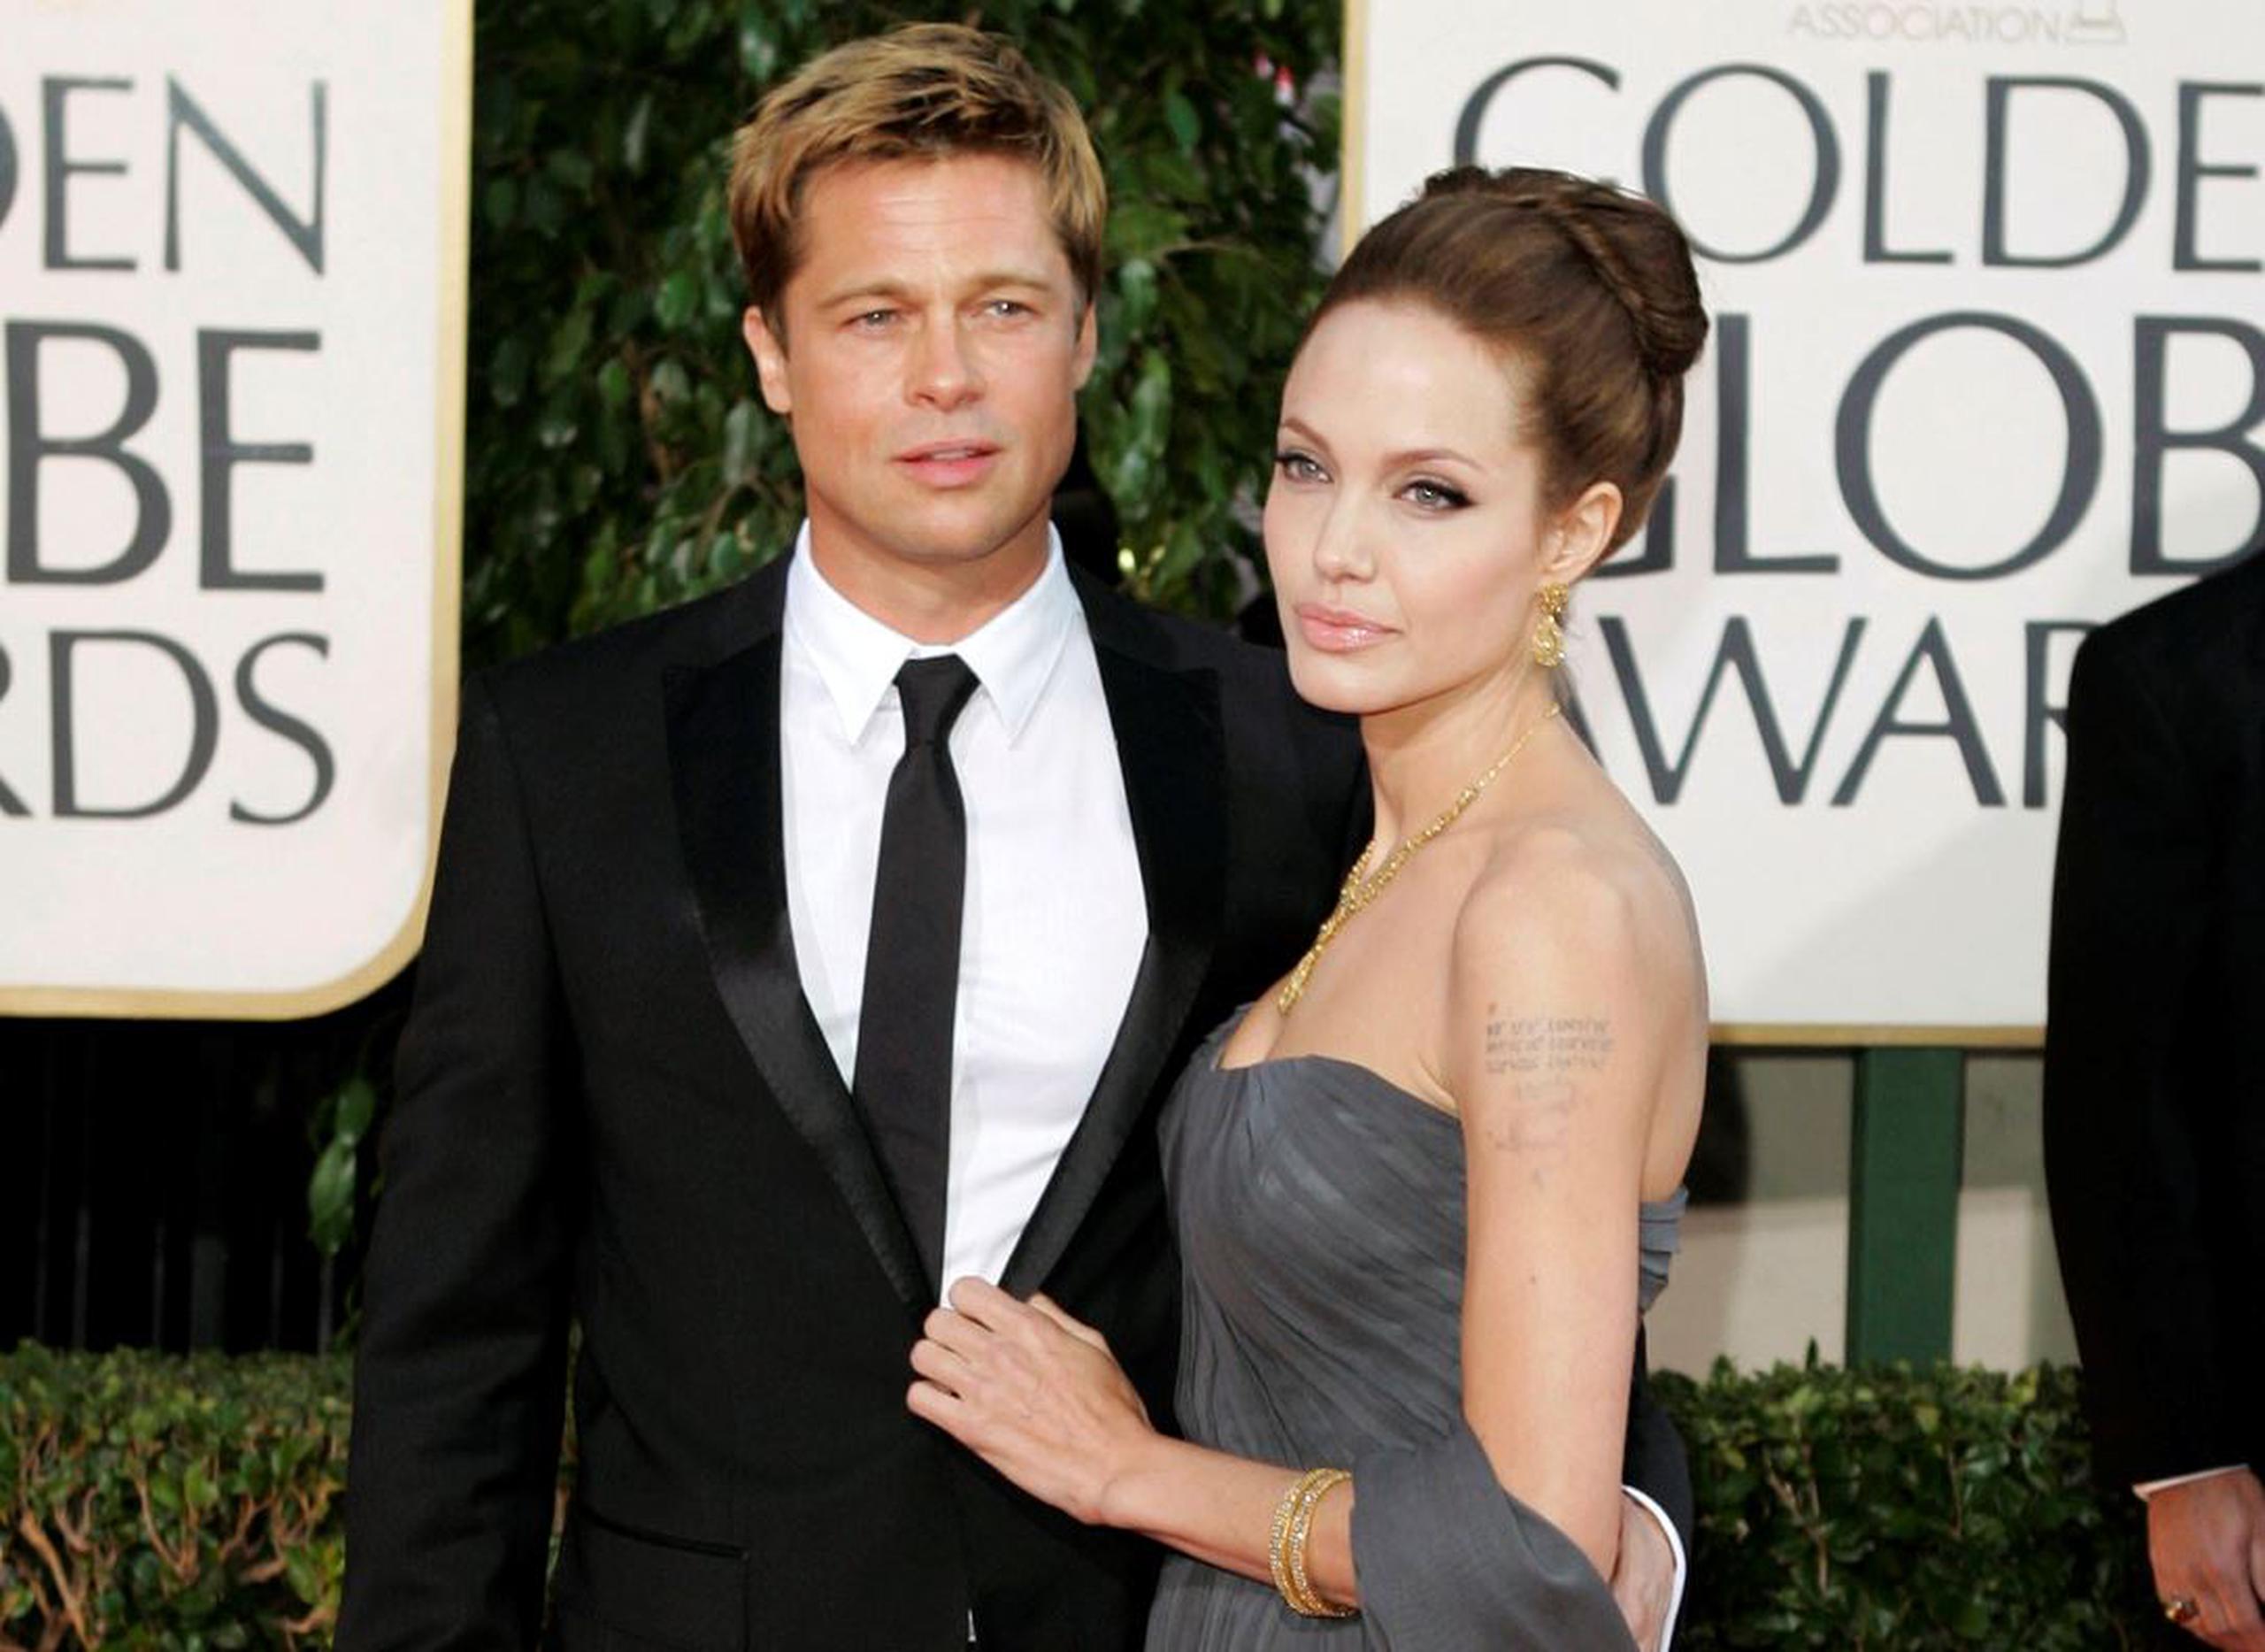 En la contrademanda presentada esta semana por la actriz, y a la que ha tenido acceso la CNN, Jolie acusó a su exesposo Brad Pitt de “librar una guerra vengativa contra ella” y de “secuestrar” el control del lucrativo negocio de bodegas que una vez compartieron.